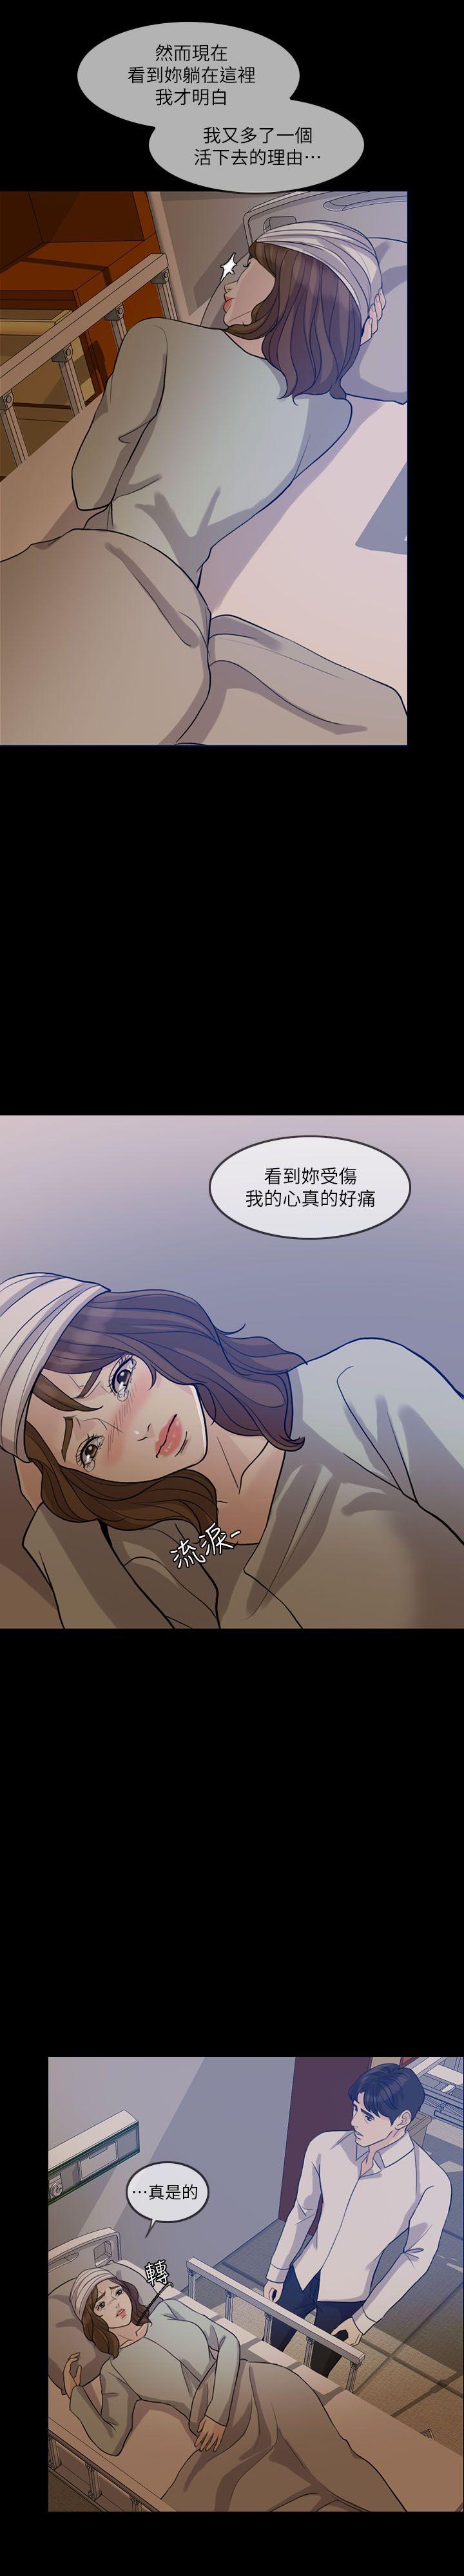 韩国污漫画 失控的愛 第15话-轰轰烈烈地来一场 21